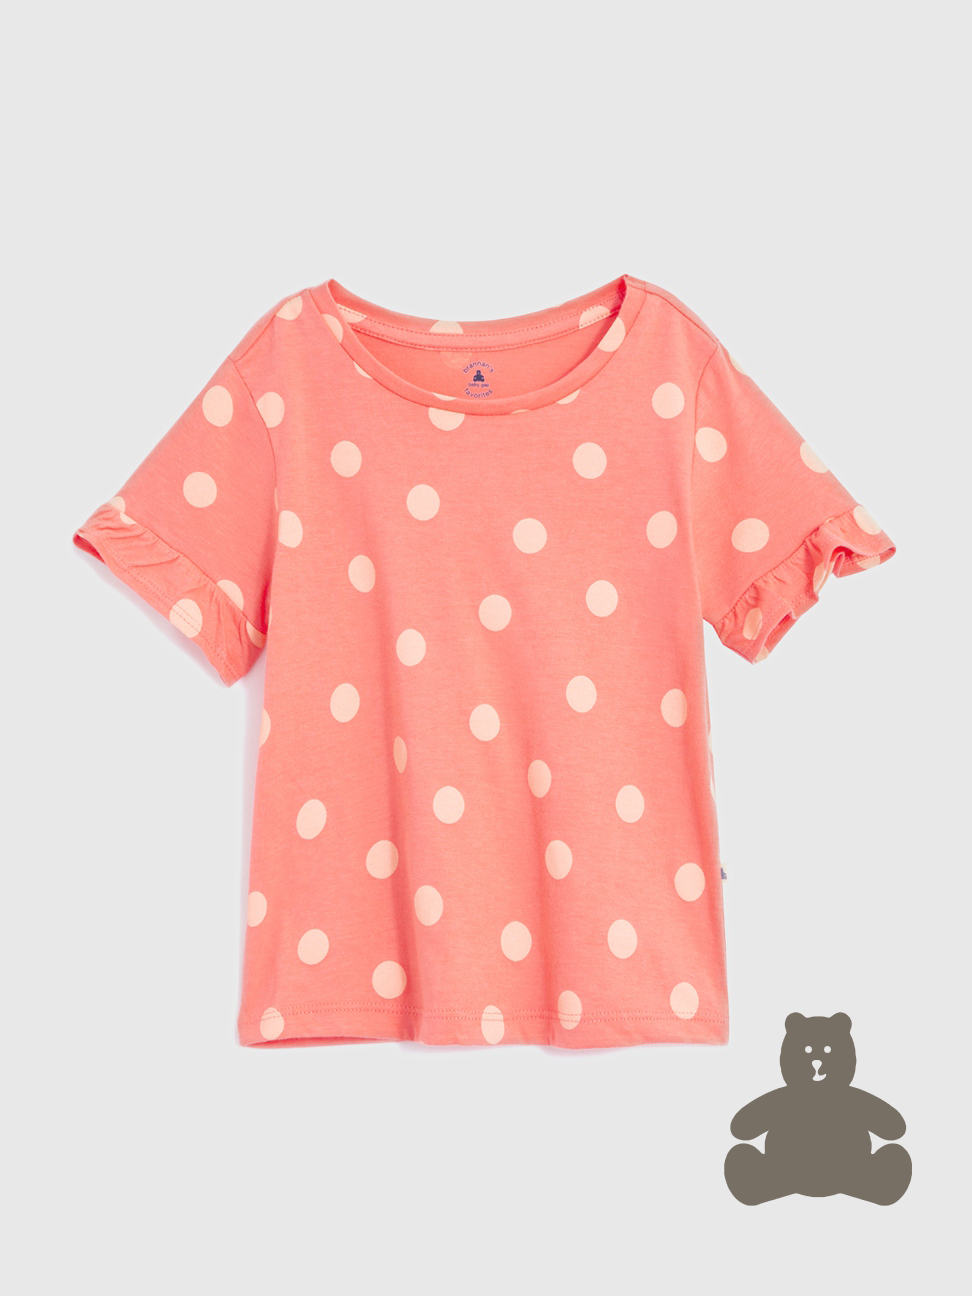 女幼童|純棉印花短袖T恤 布萊納系列-粉色波點